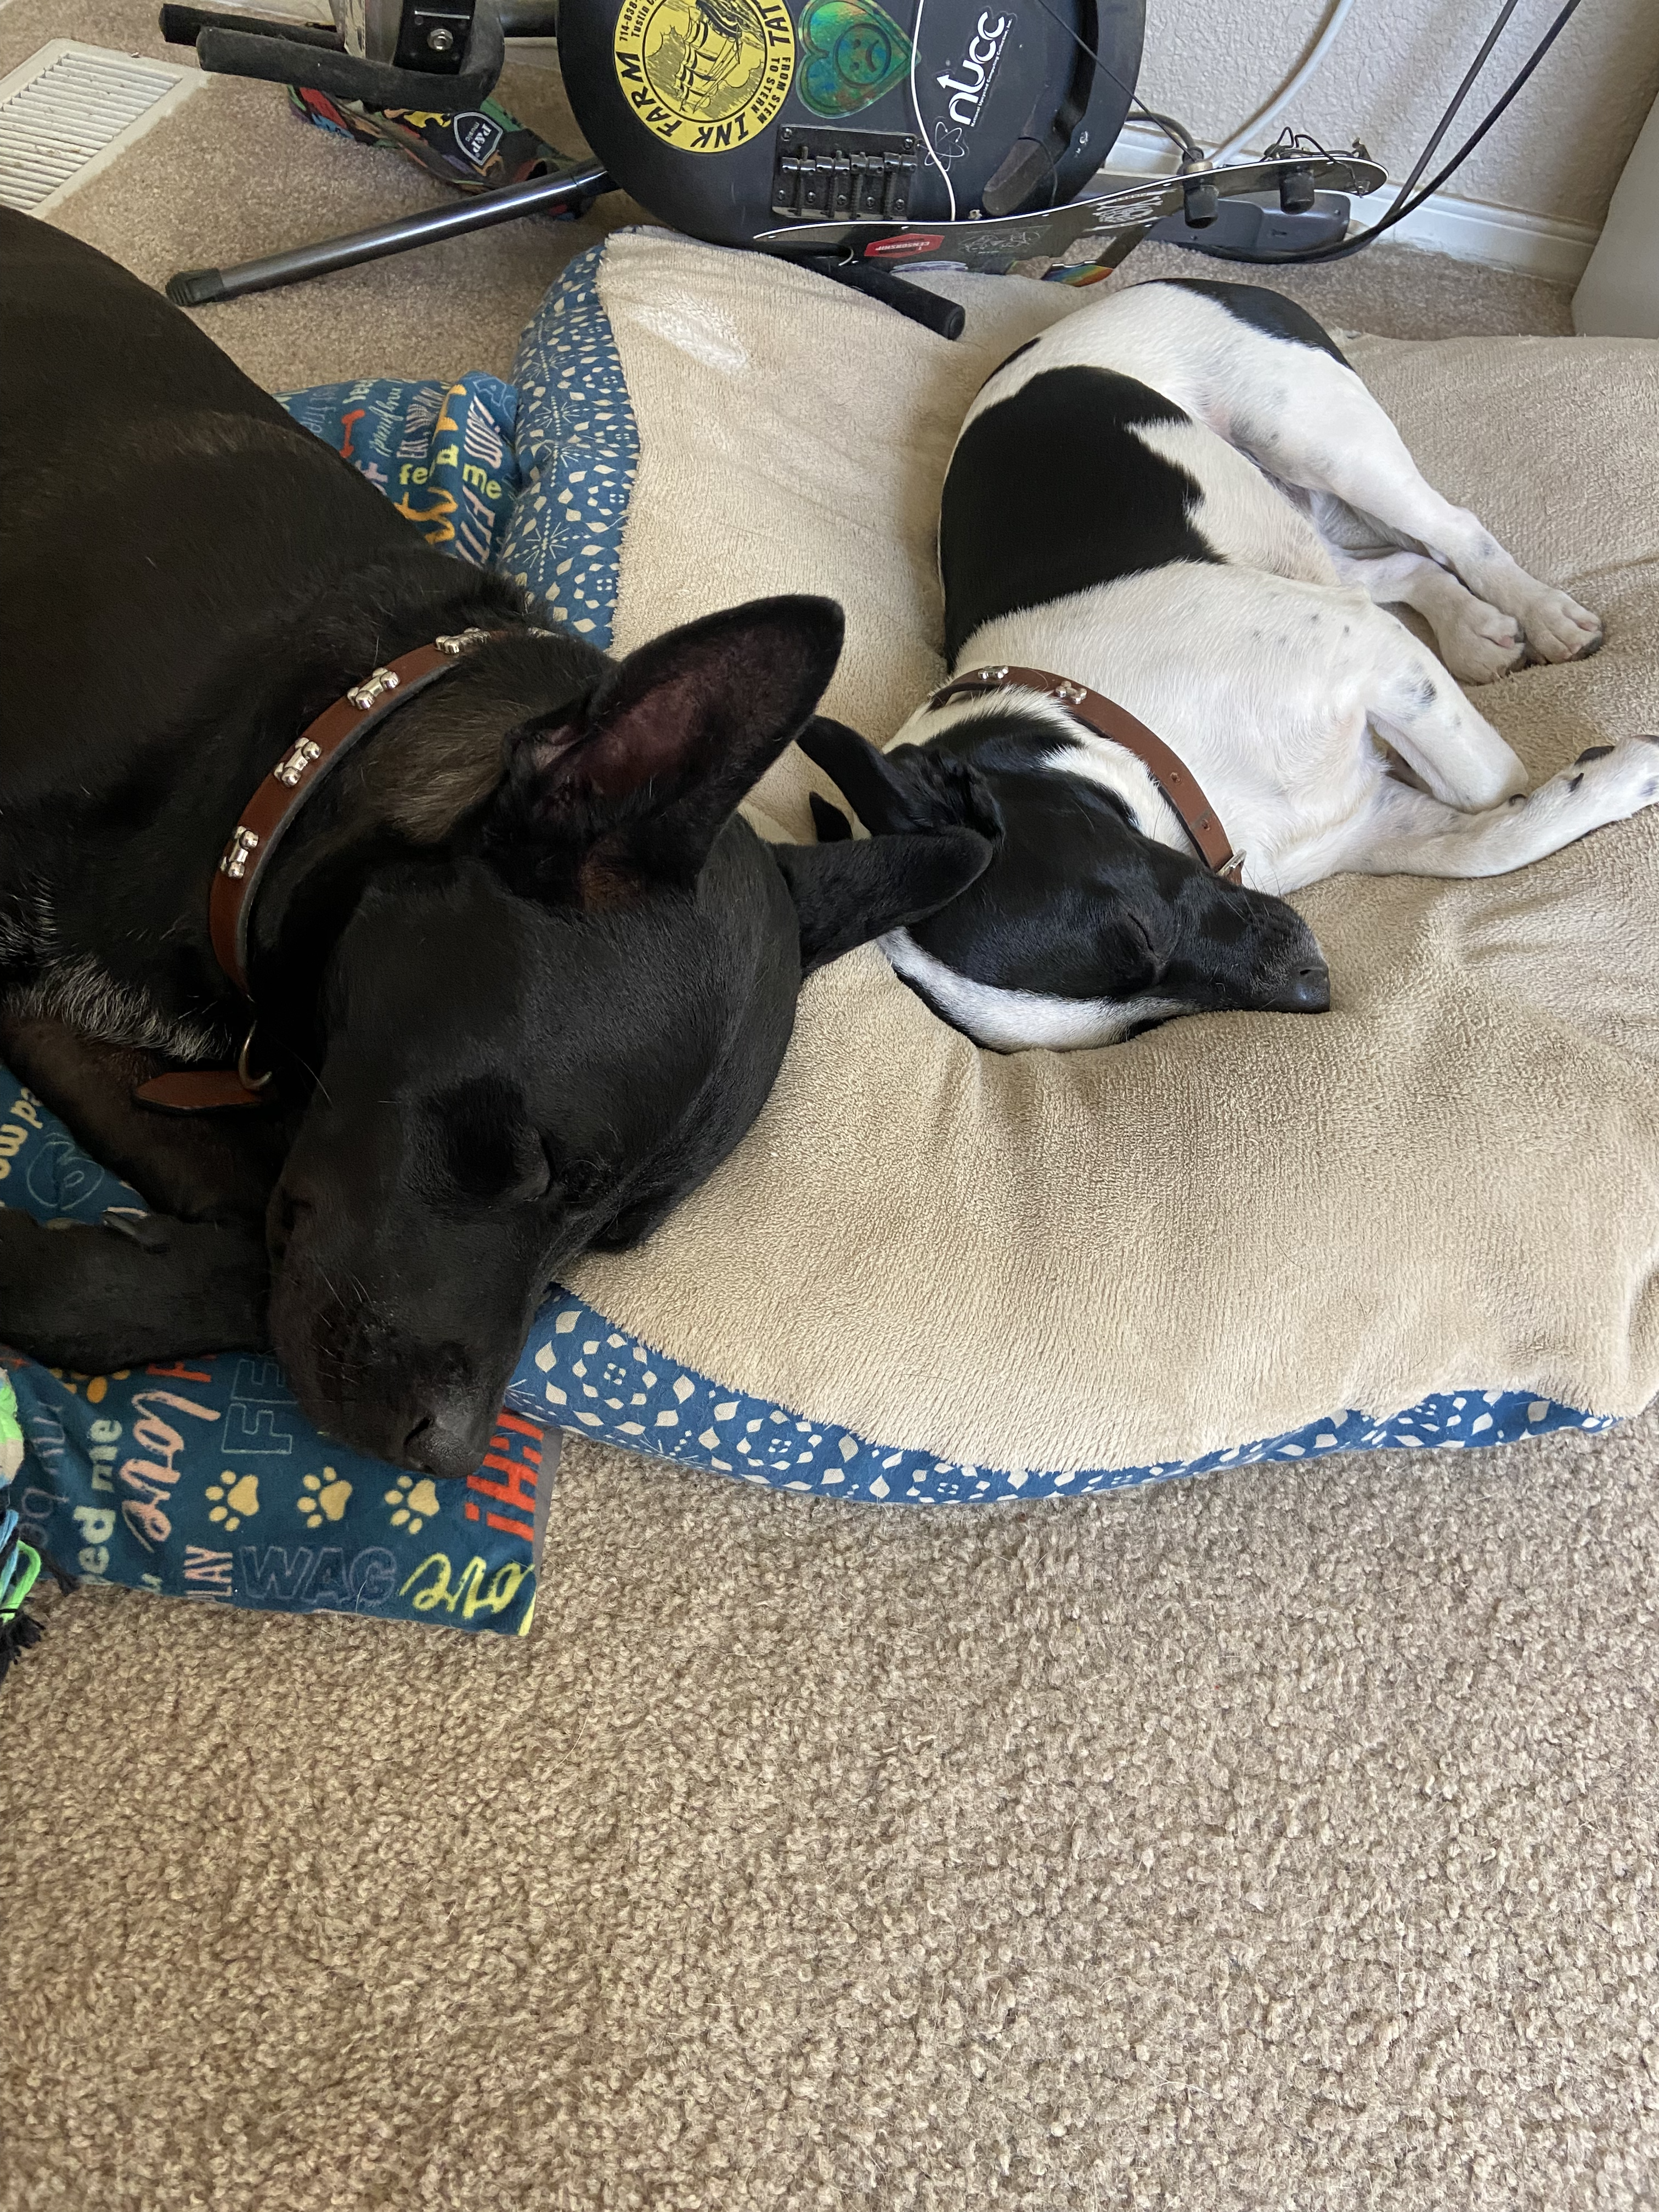 Two dogs sleeping head to head